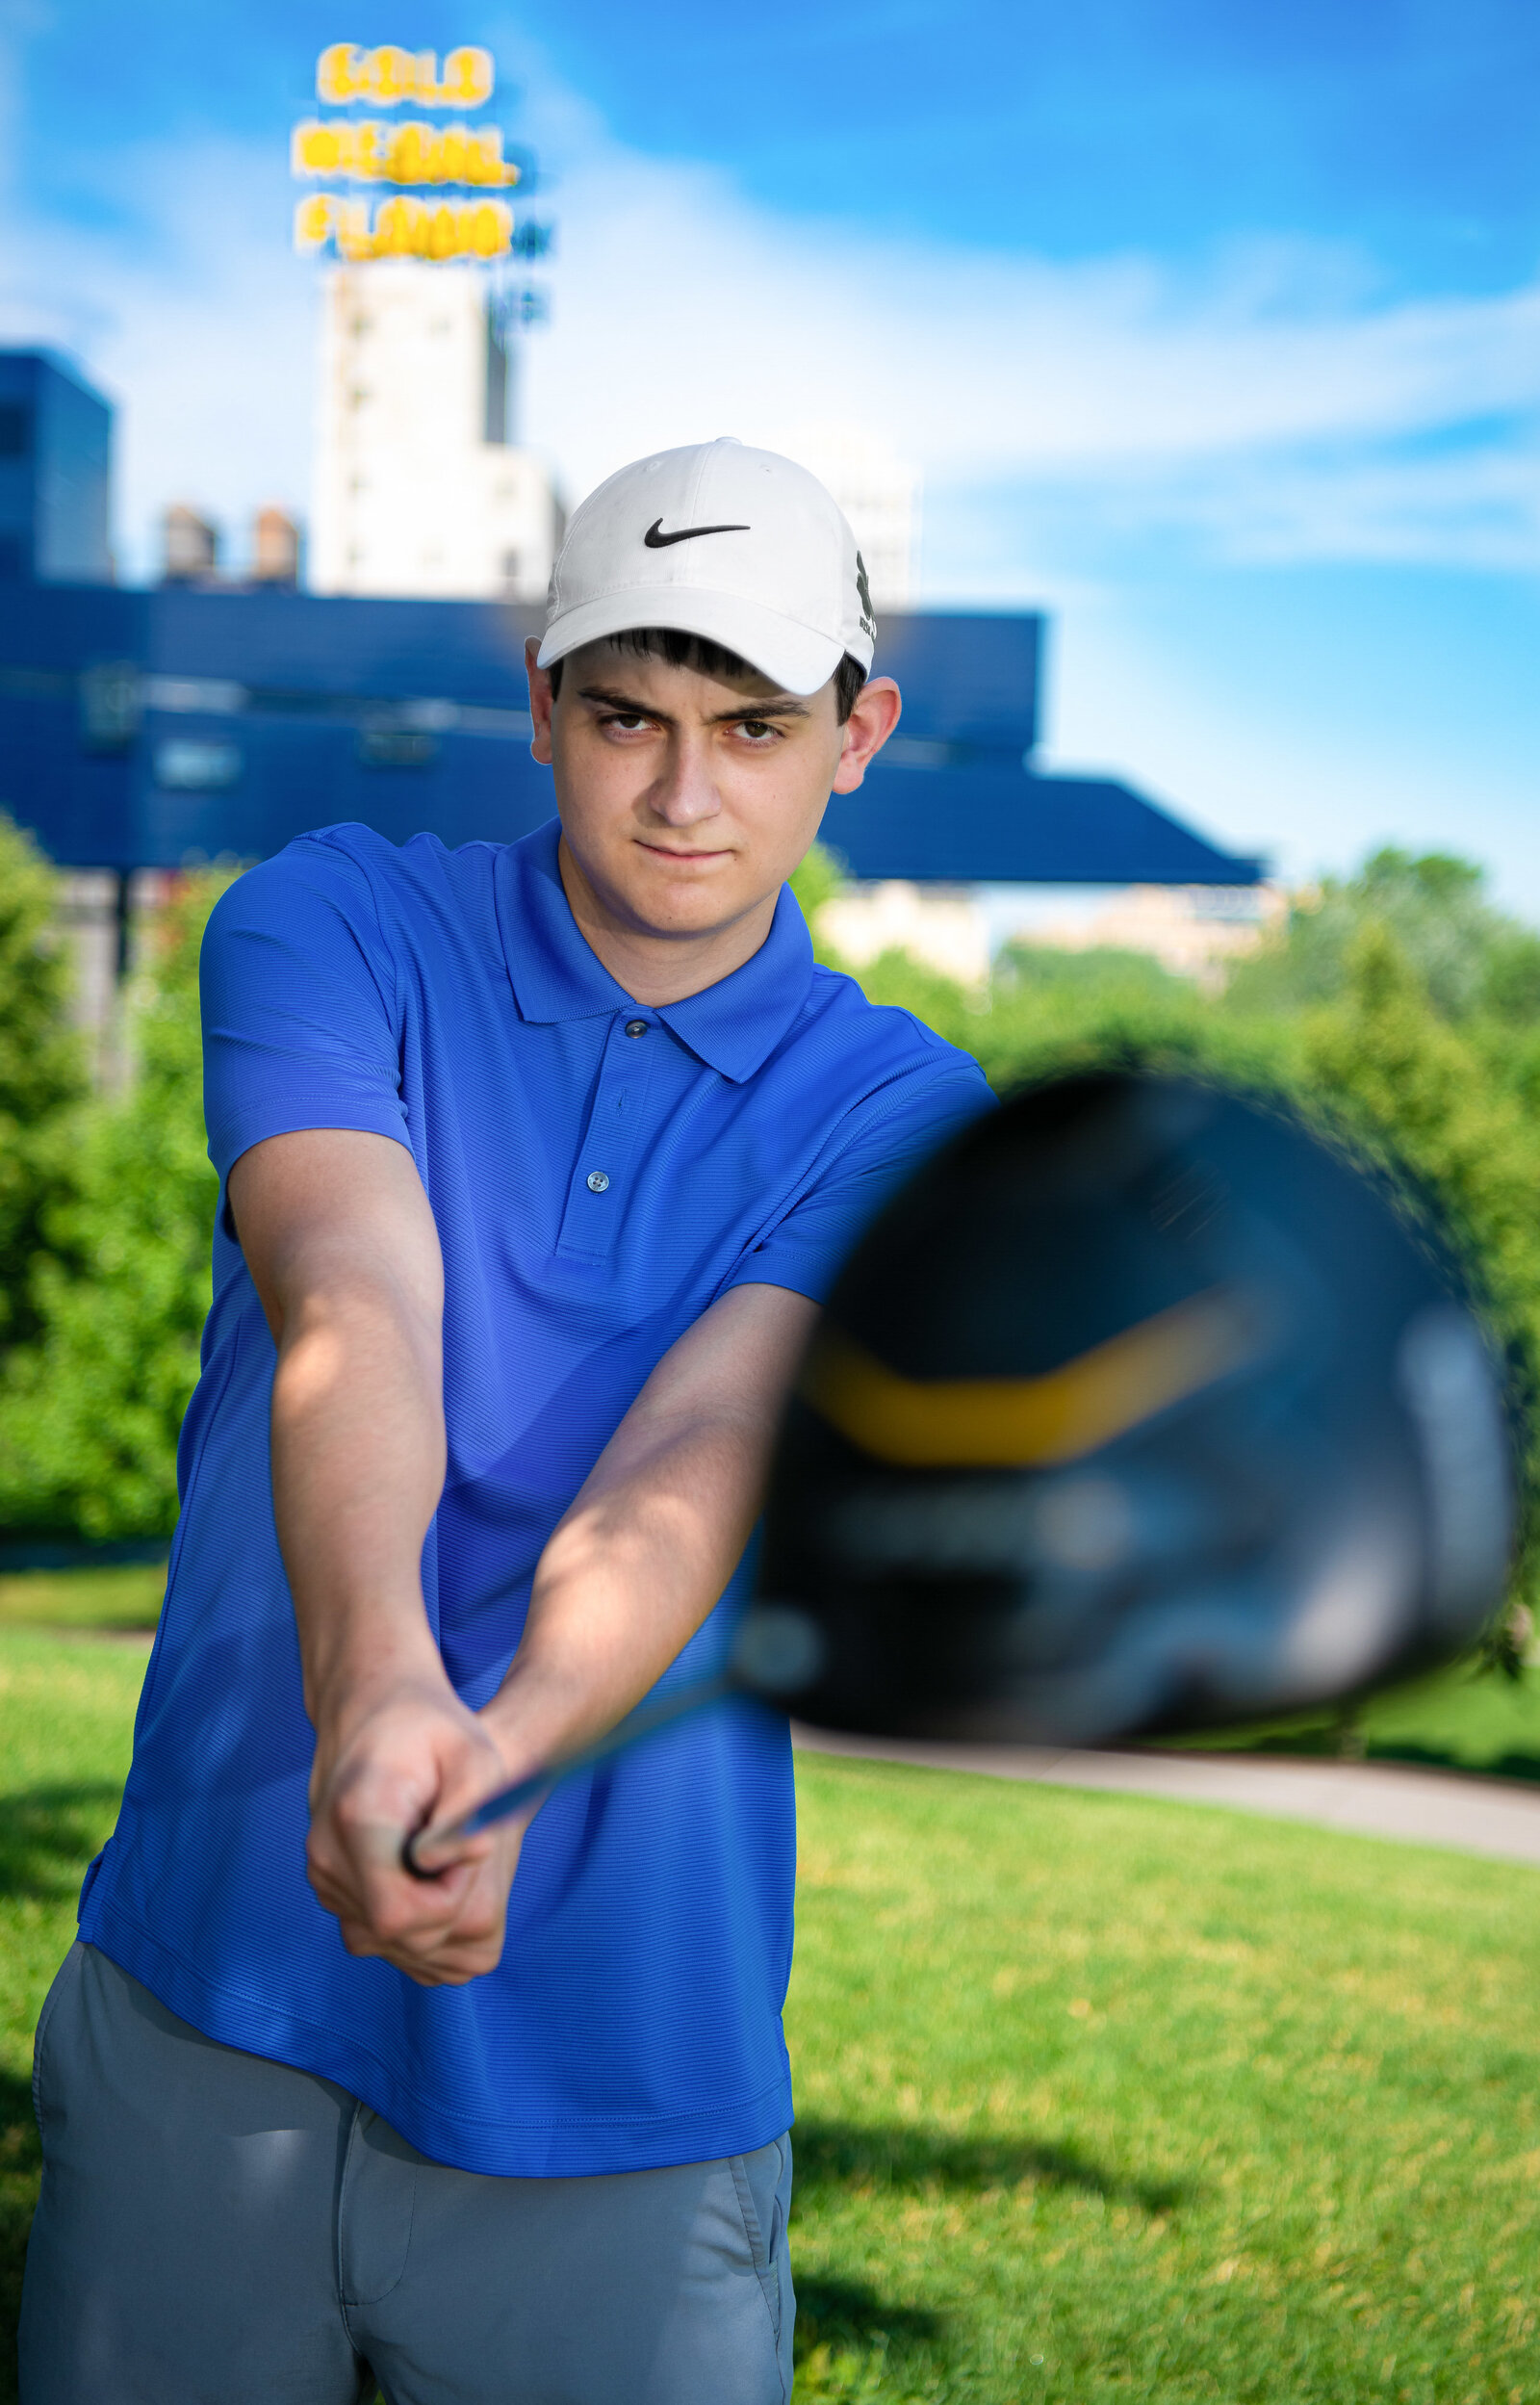 Senior boy dressed in blue with a golf club